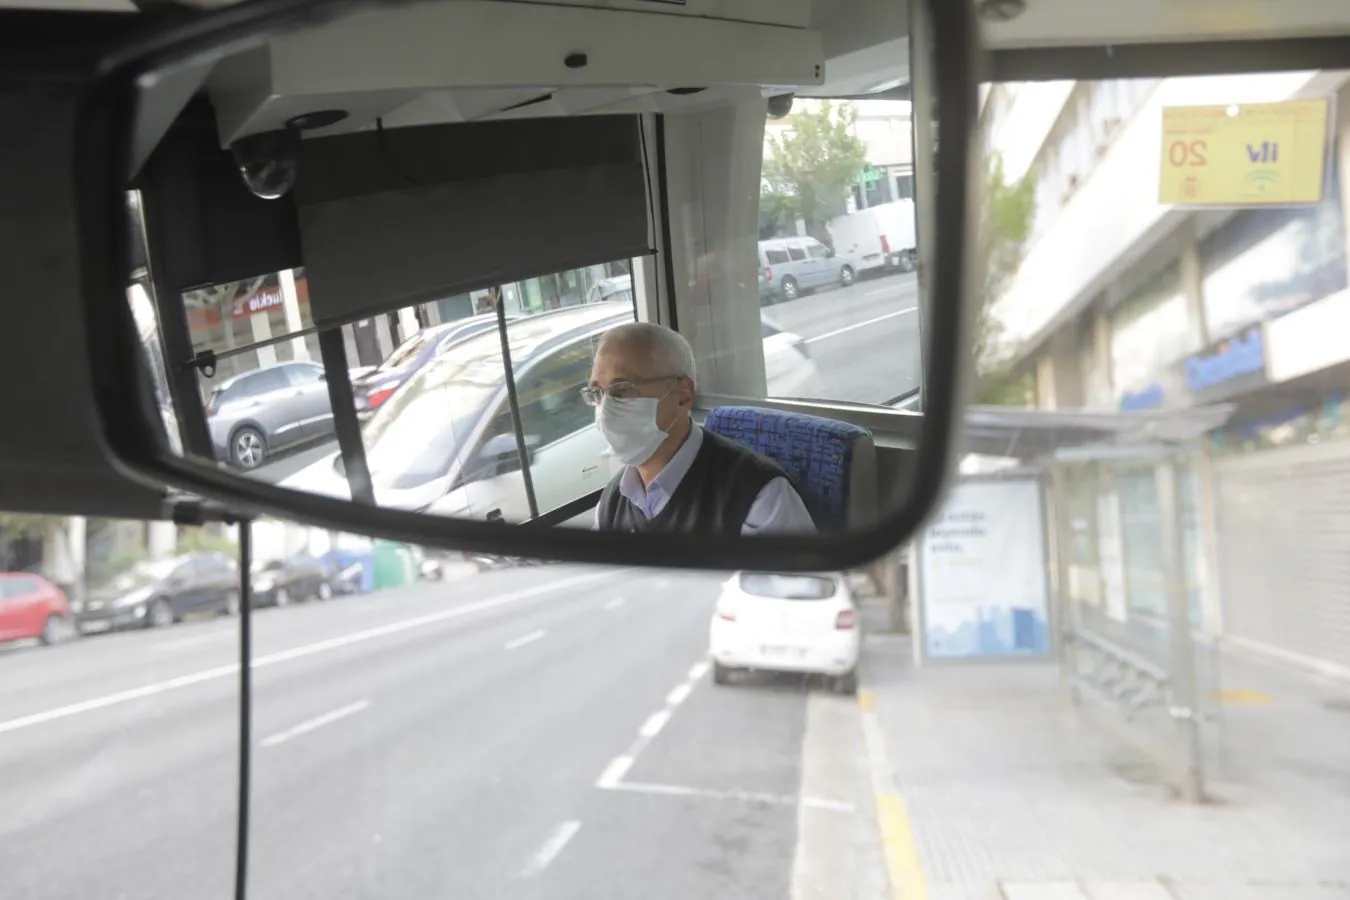 FOTOS: Reparto de mascarillas entre los usuarios del transporte público de Cádiz